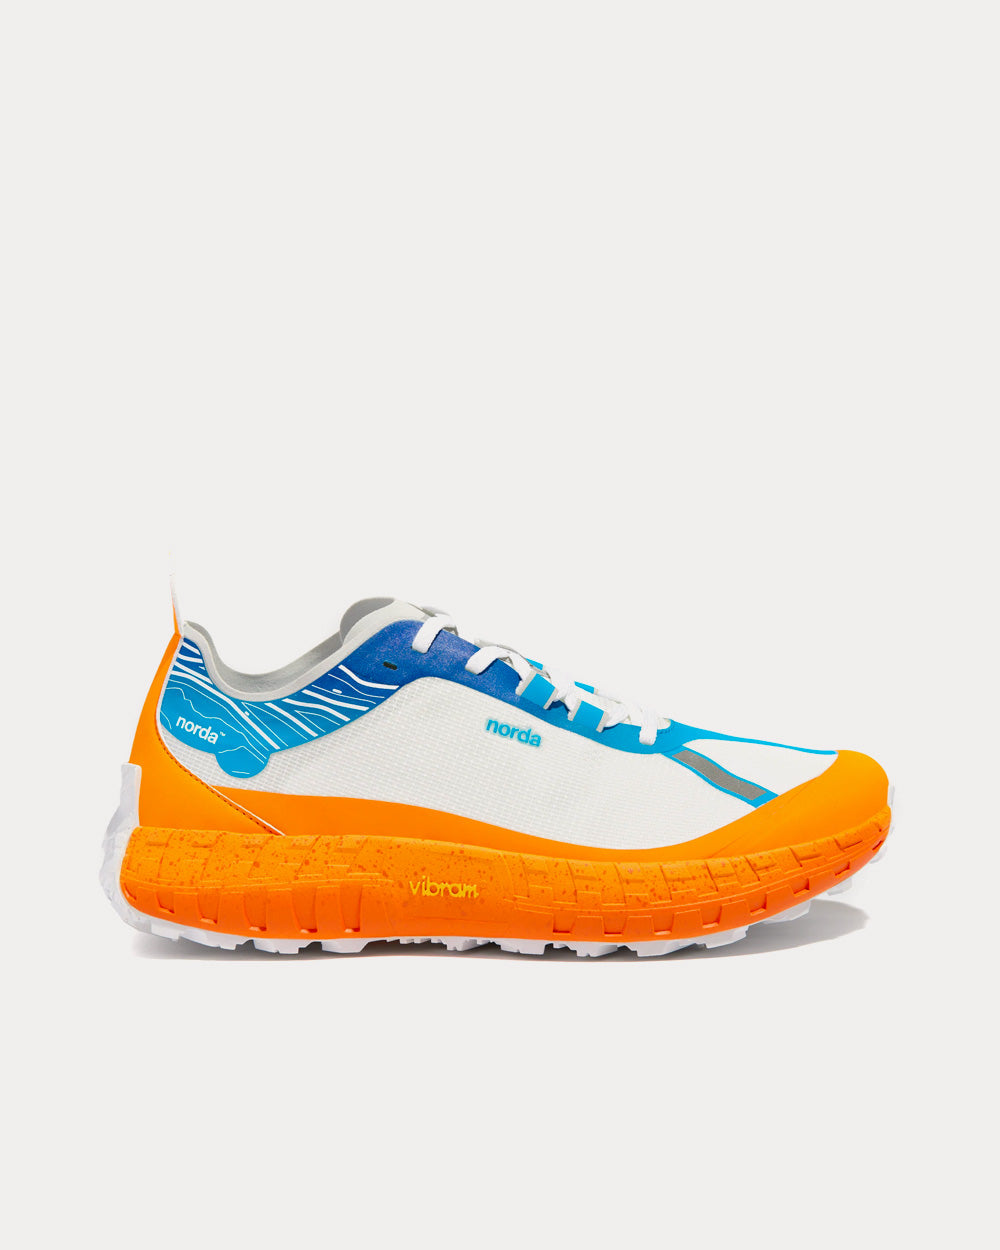 Norda - 001 RZ Orange Running Shoes